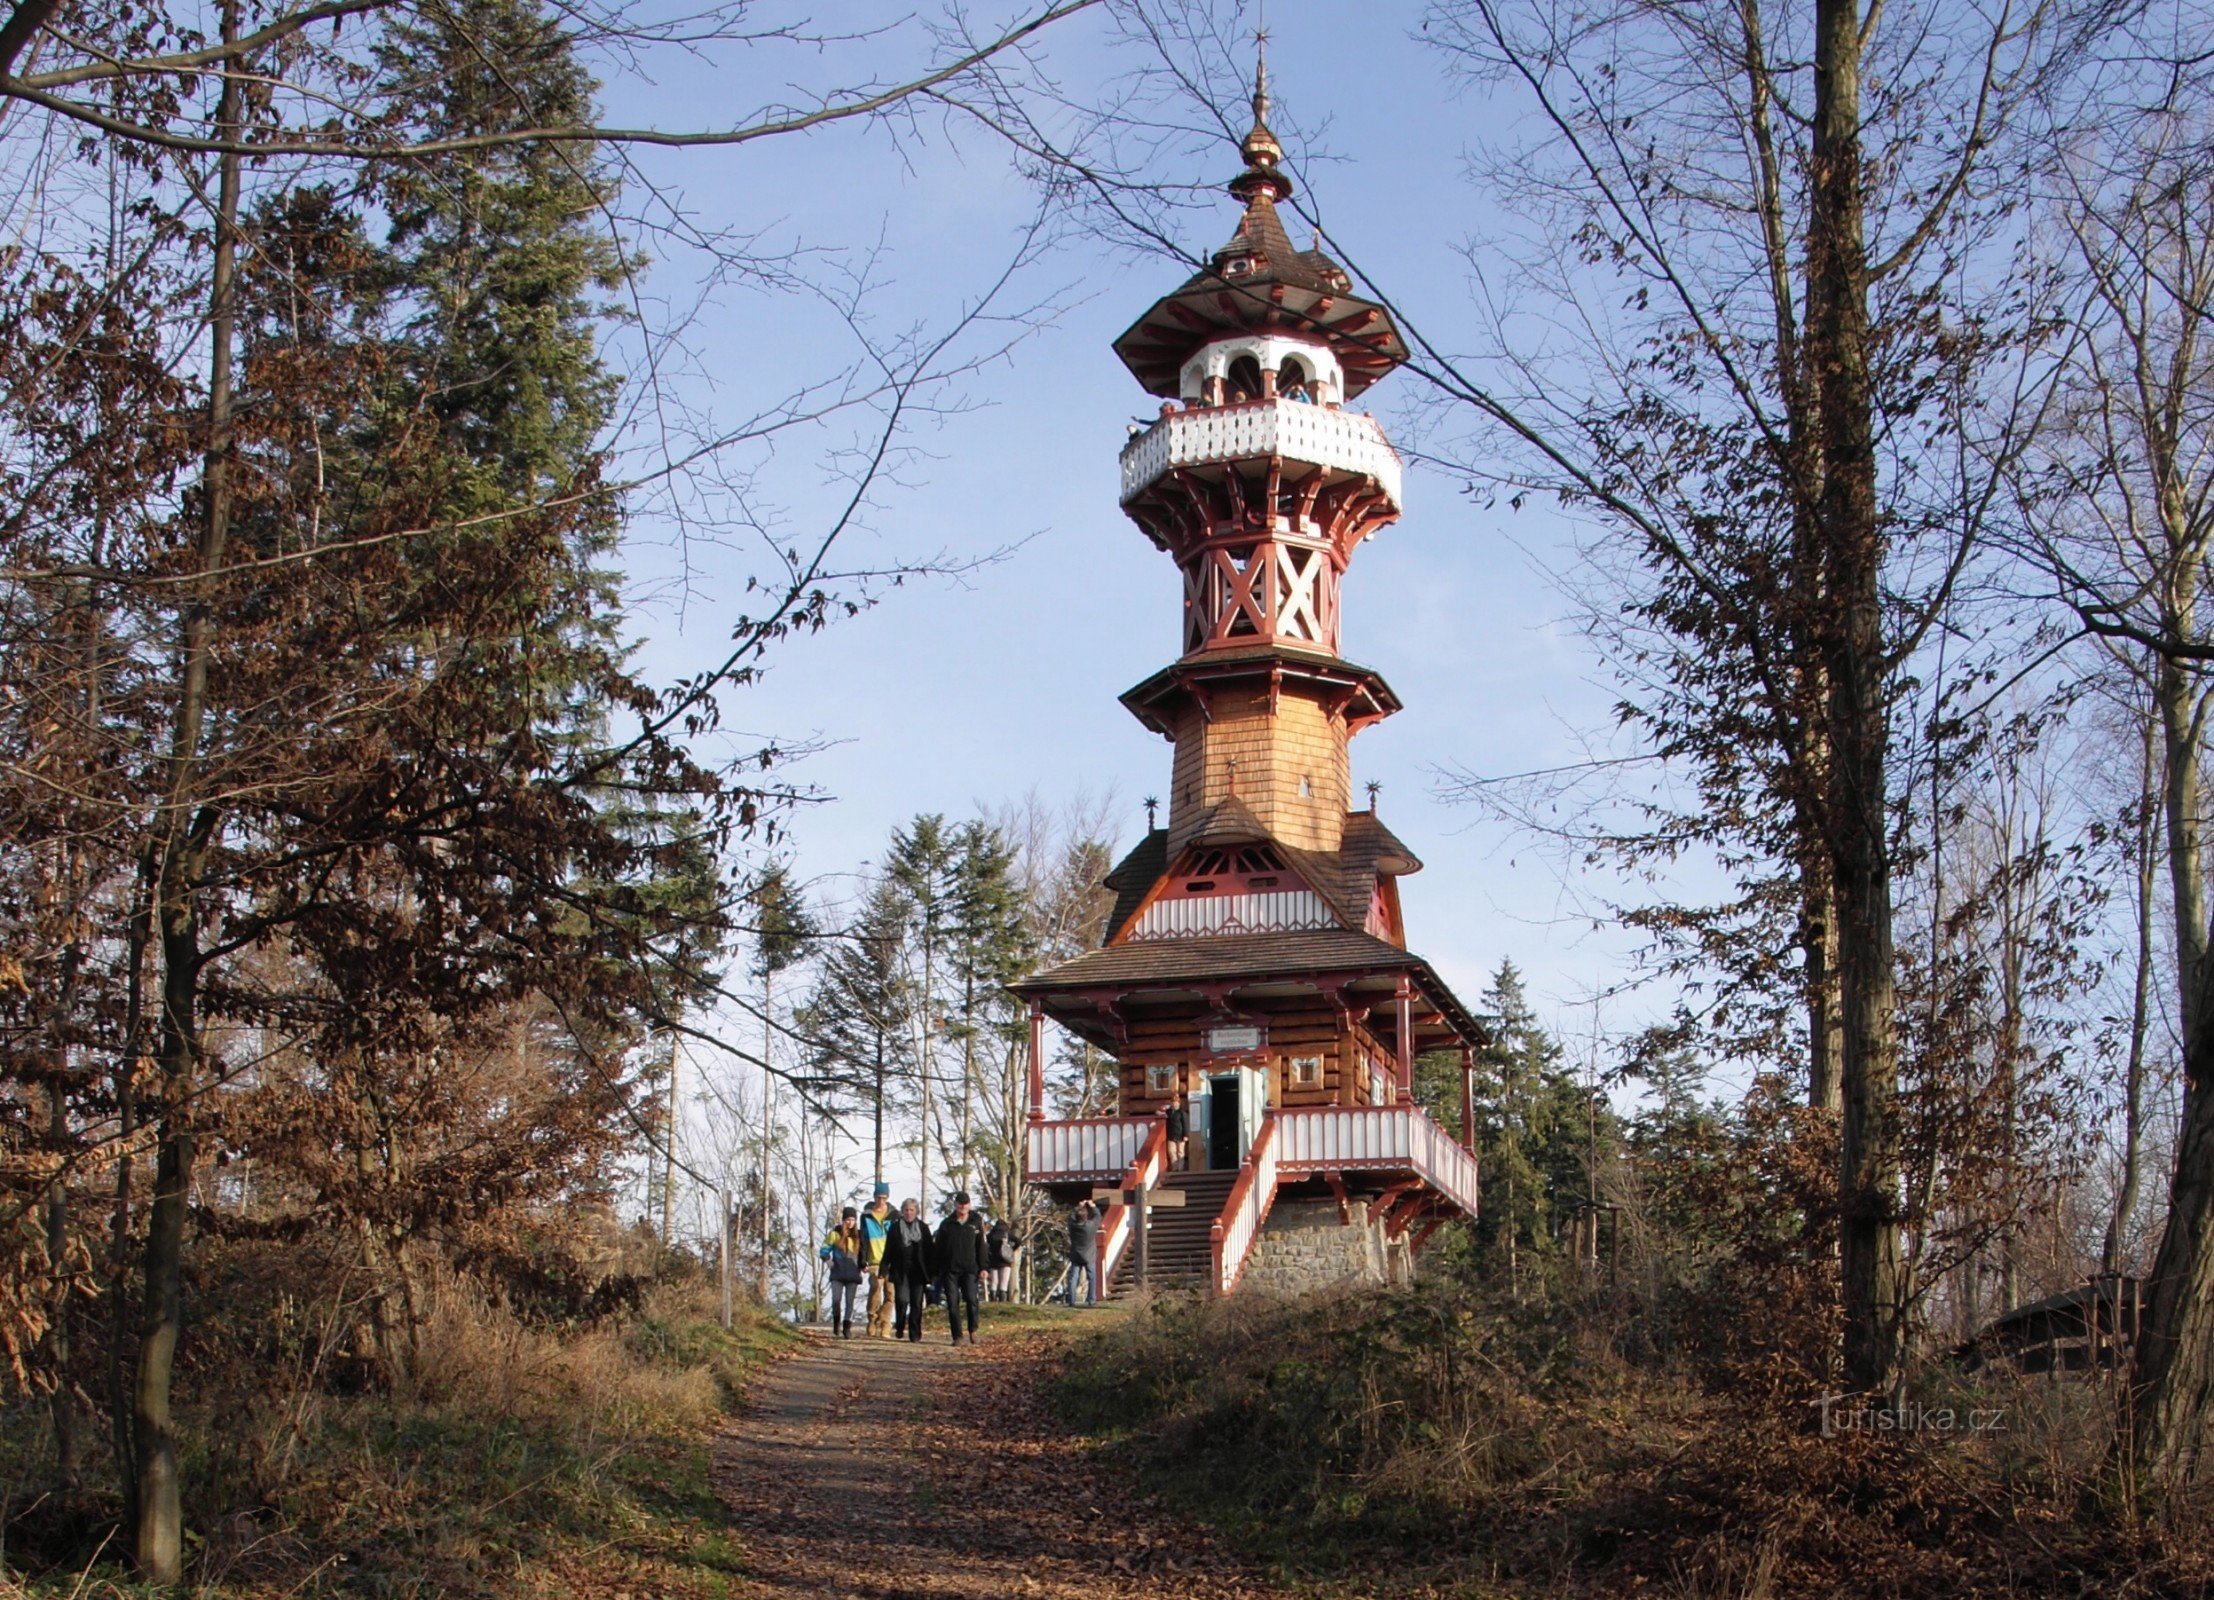 Karlův kopec gần Rožnov pod Radhoštěm - tháp quan sát Jurkovič (thống kê, lịch sử